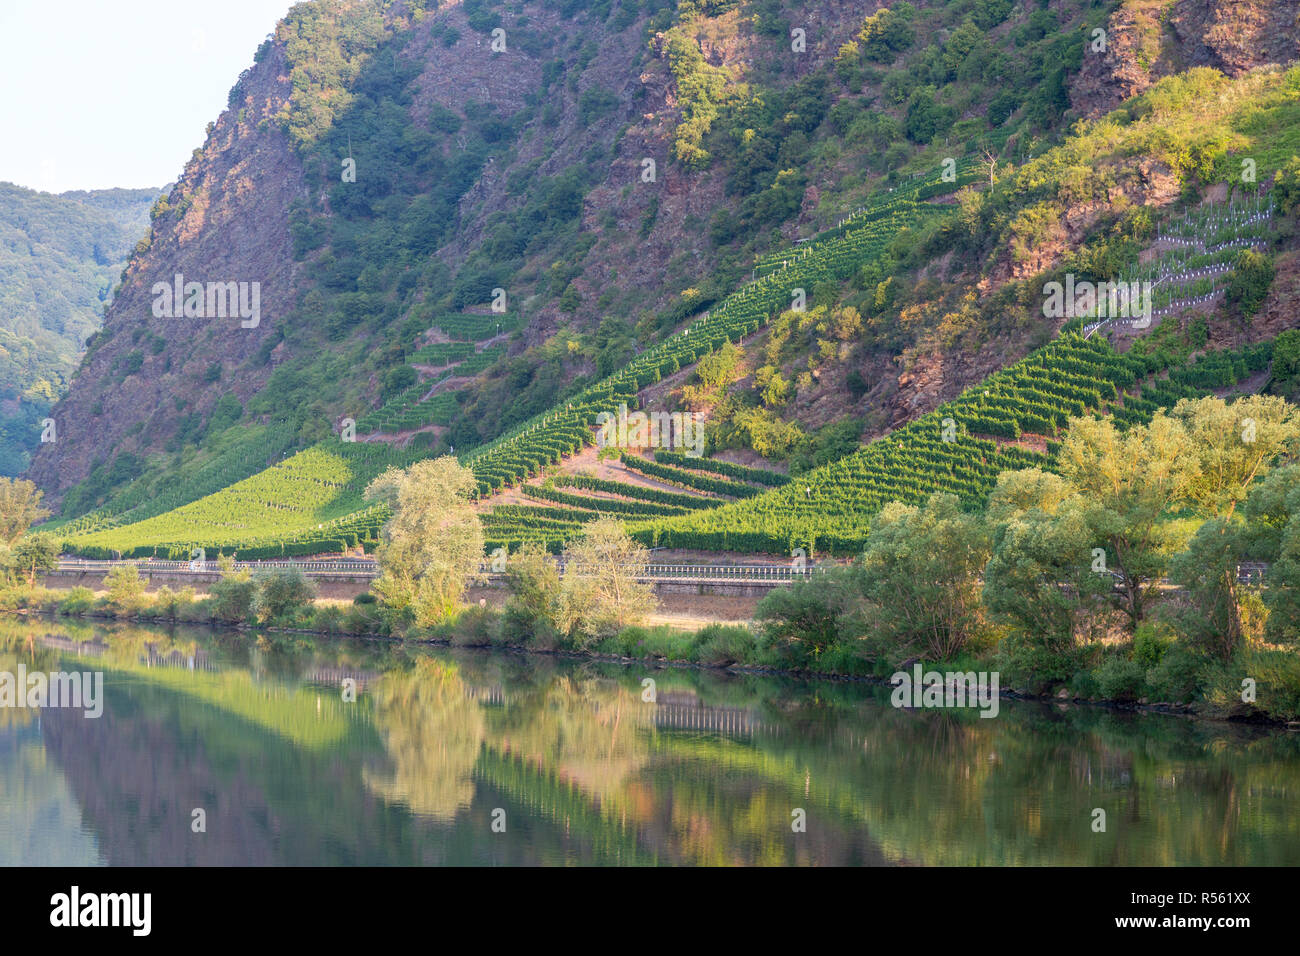 Deutschland. Weinberge steigen auf steilen, felsigen Hängen entlang der Mosel in der Nähe von Cochem, am frühen Morgen. Stockfoto